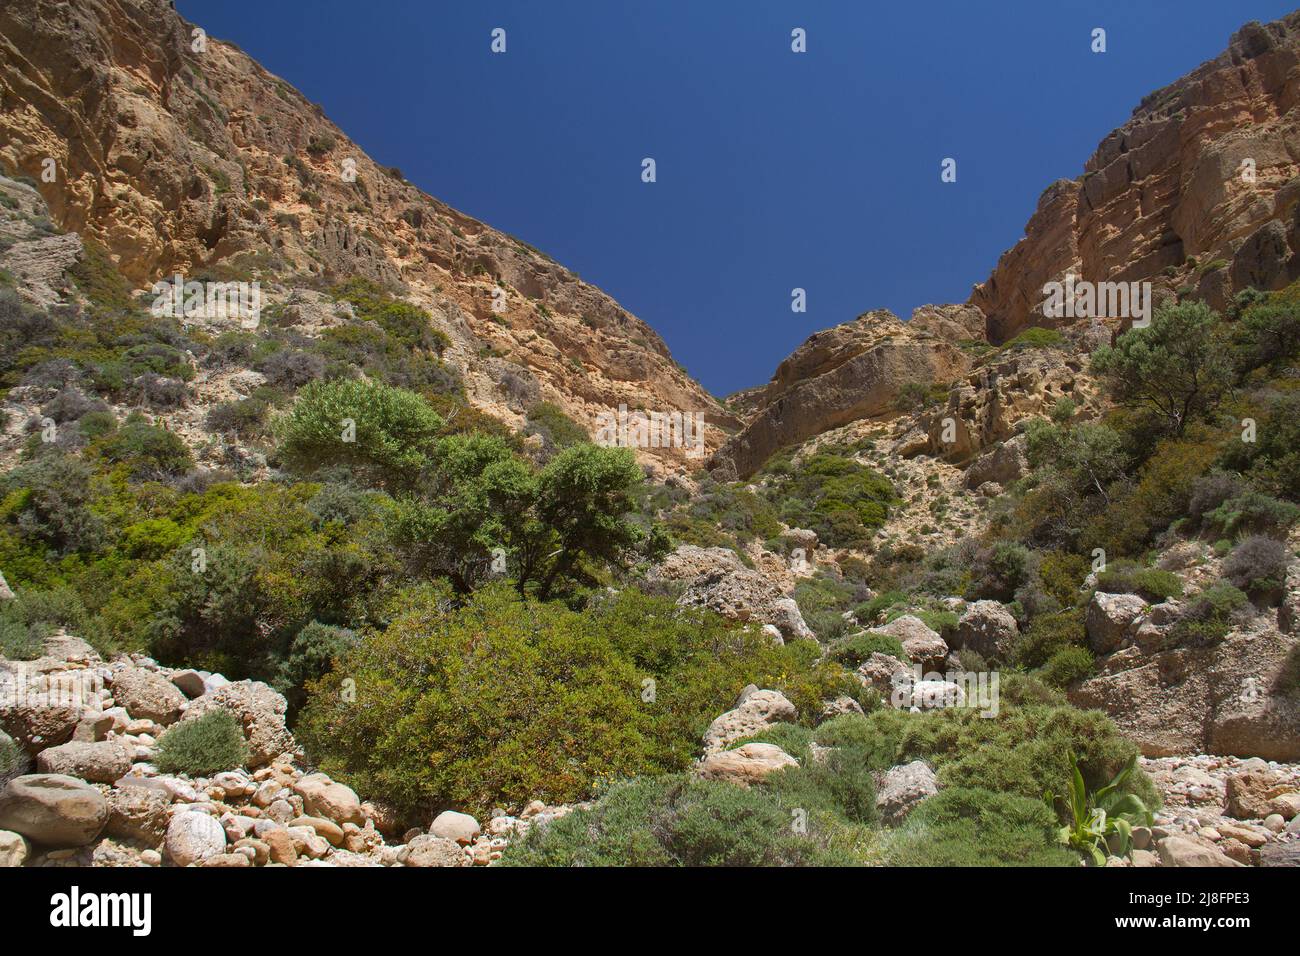 Desolado cañón seco y rugoso erosionado bajo el cielo azul, algo de vegetación dura y espinosa en primer plano Foto de stock